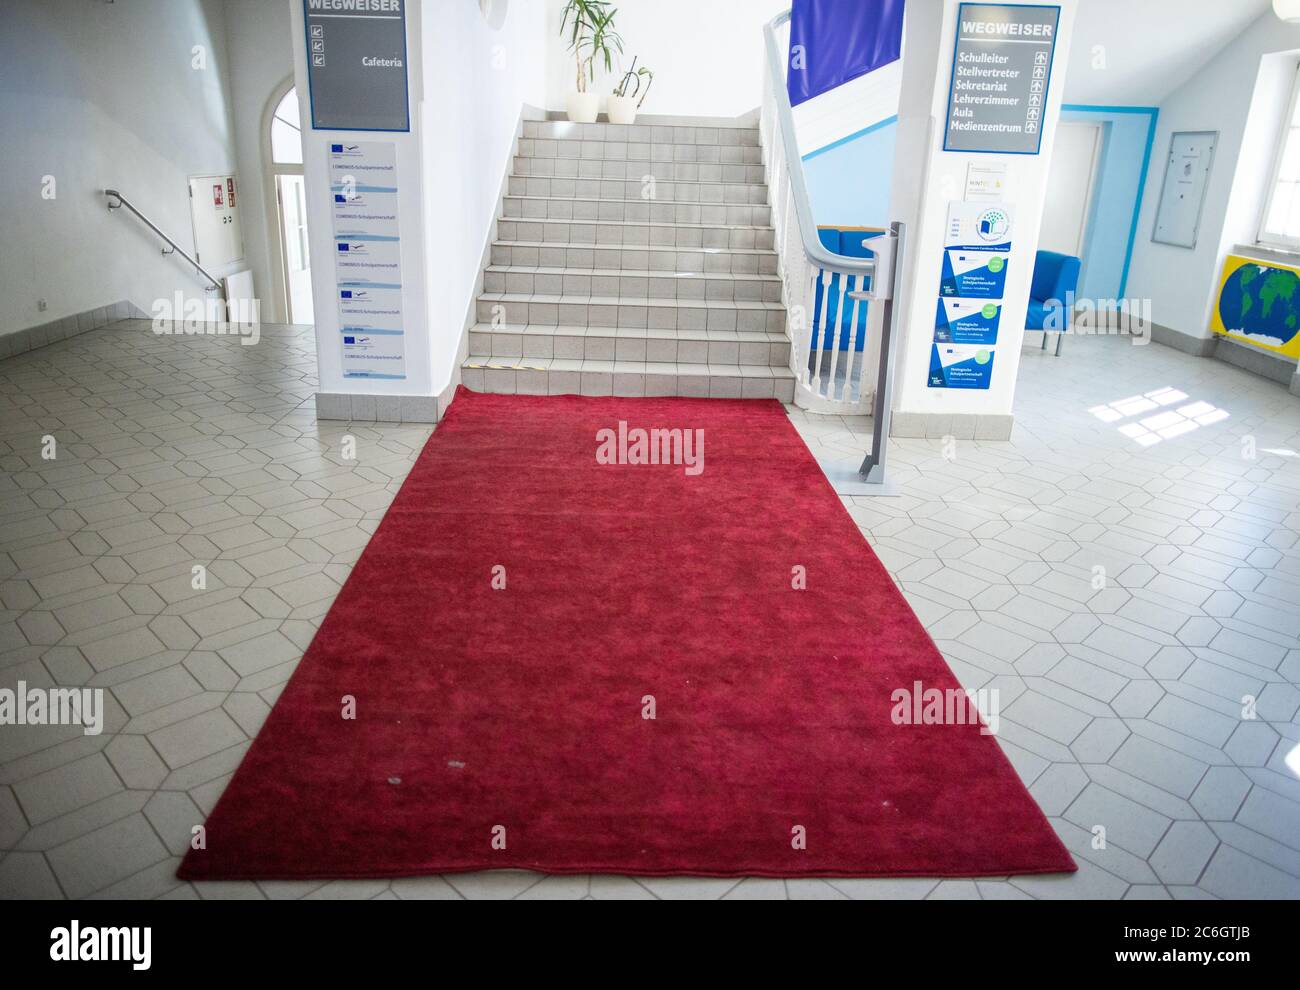 Neustrelitz, Deutschland. Juni 2020. Im Treppenhaus des Gymnasiums Carolinum in Neustrelitz ist ein roter Teppich angelegt. Quelle: Jens Büttner/dpa-Zentralbild/ZB/dpa/Alamy Live News Stockfoto